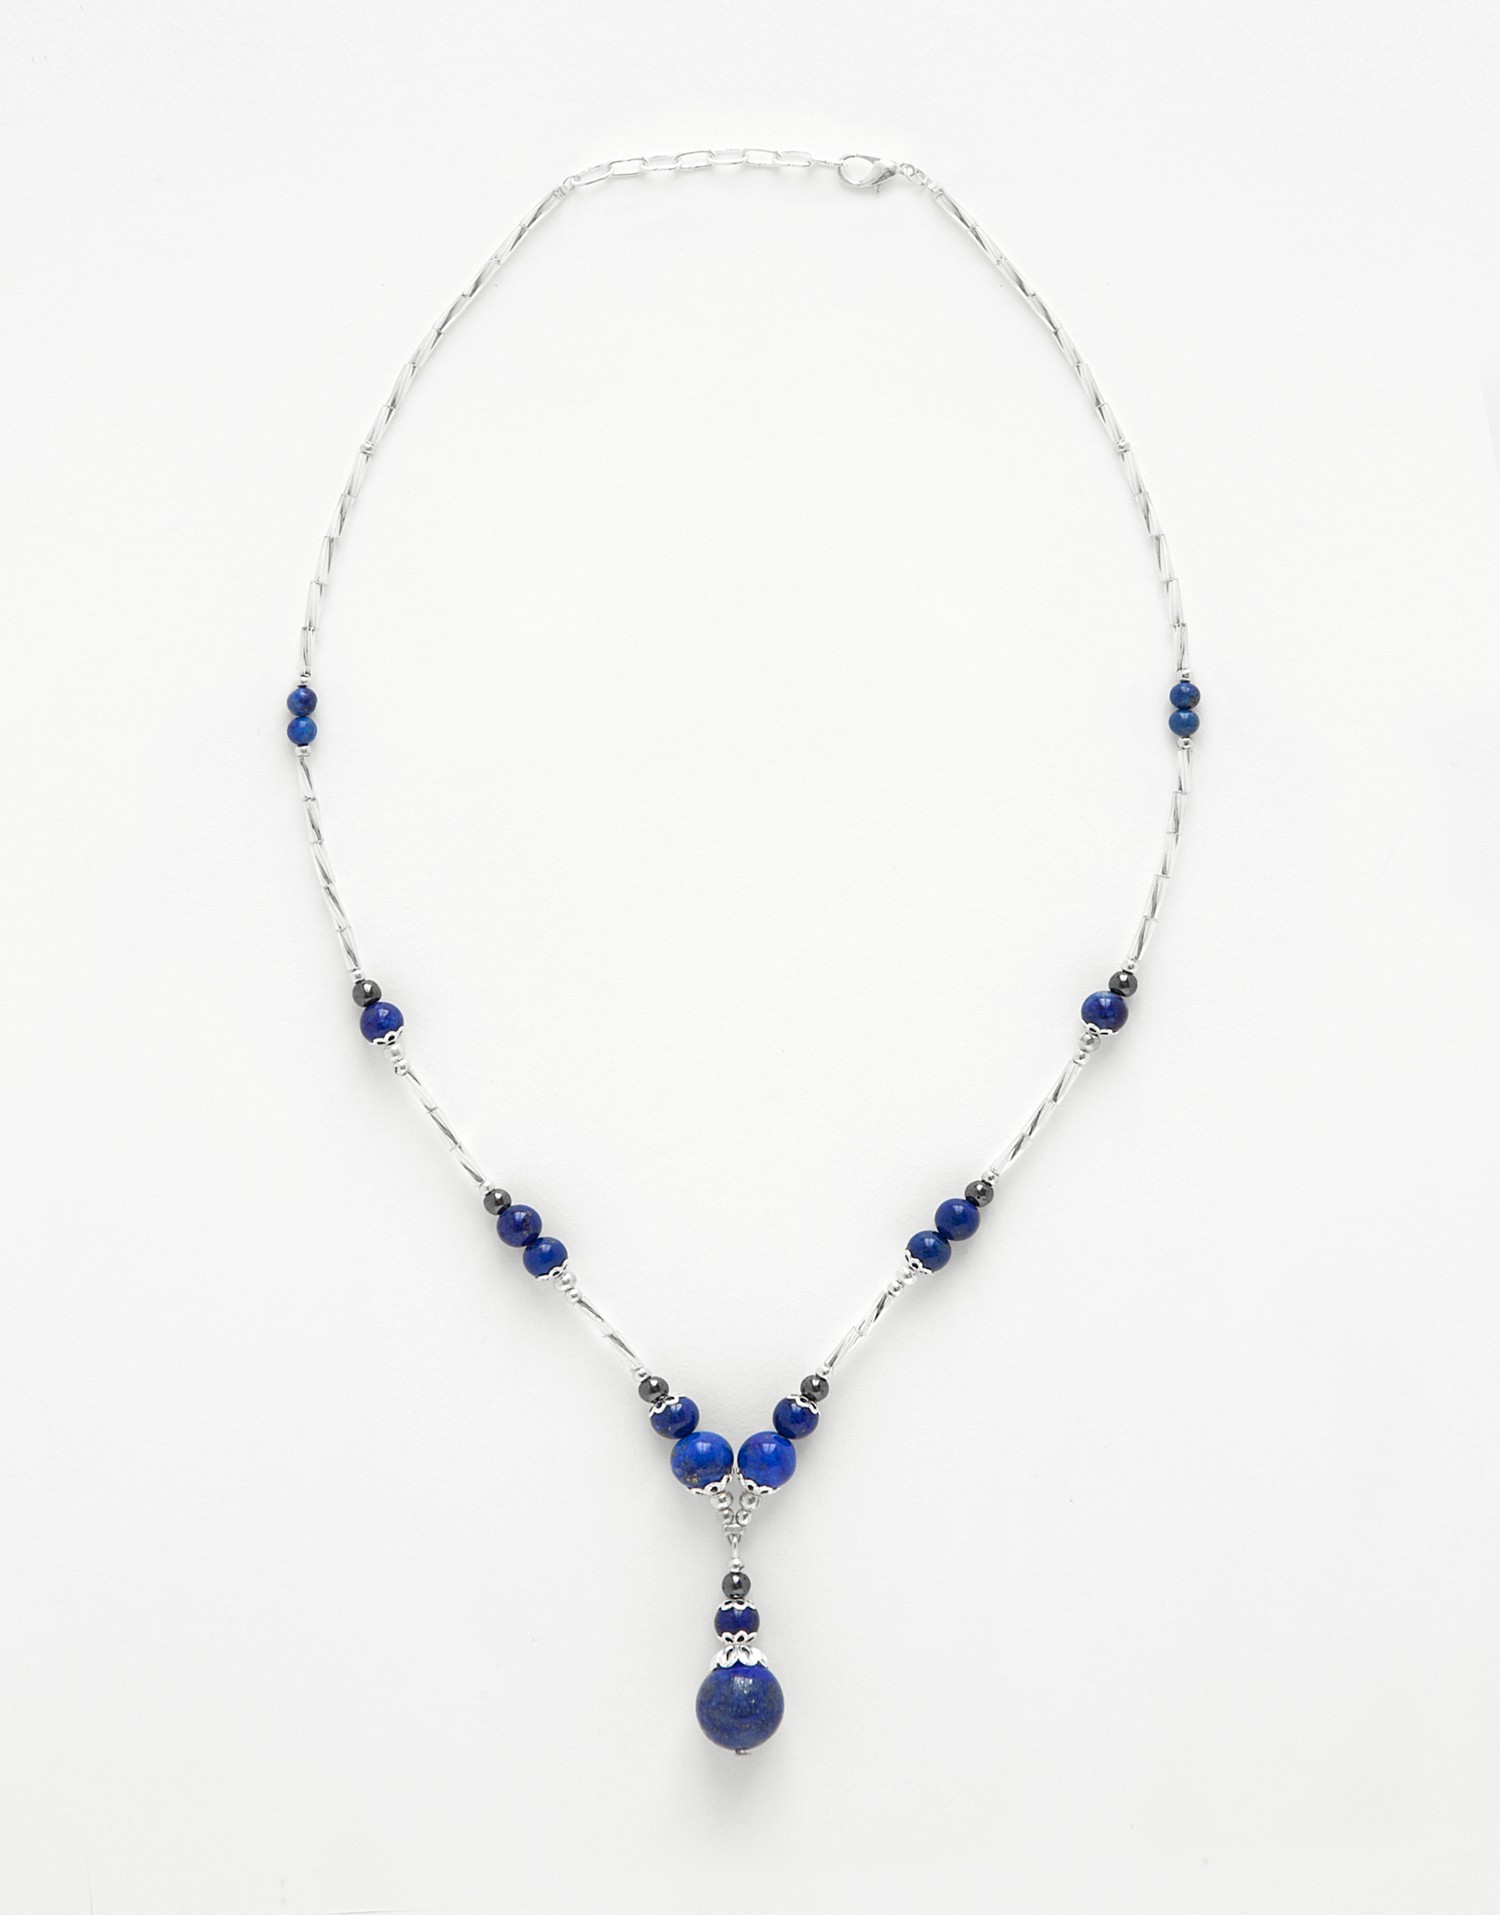 Necklace Calliope Lapis-Lazuli